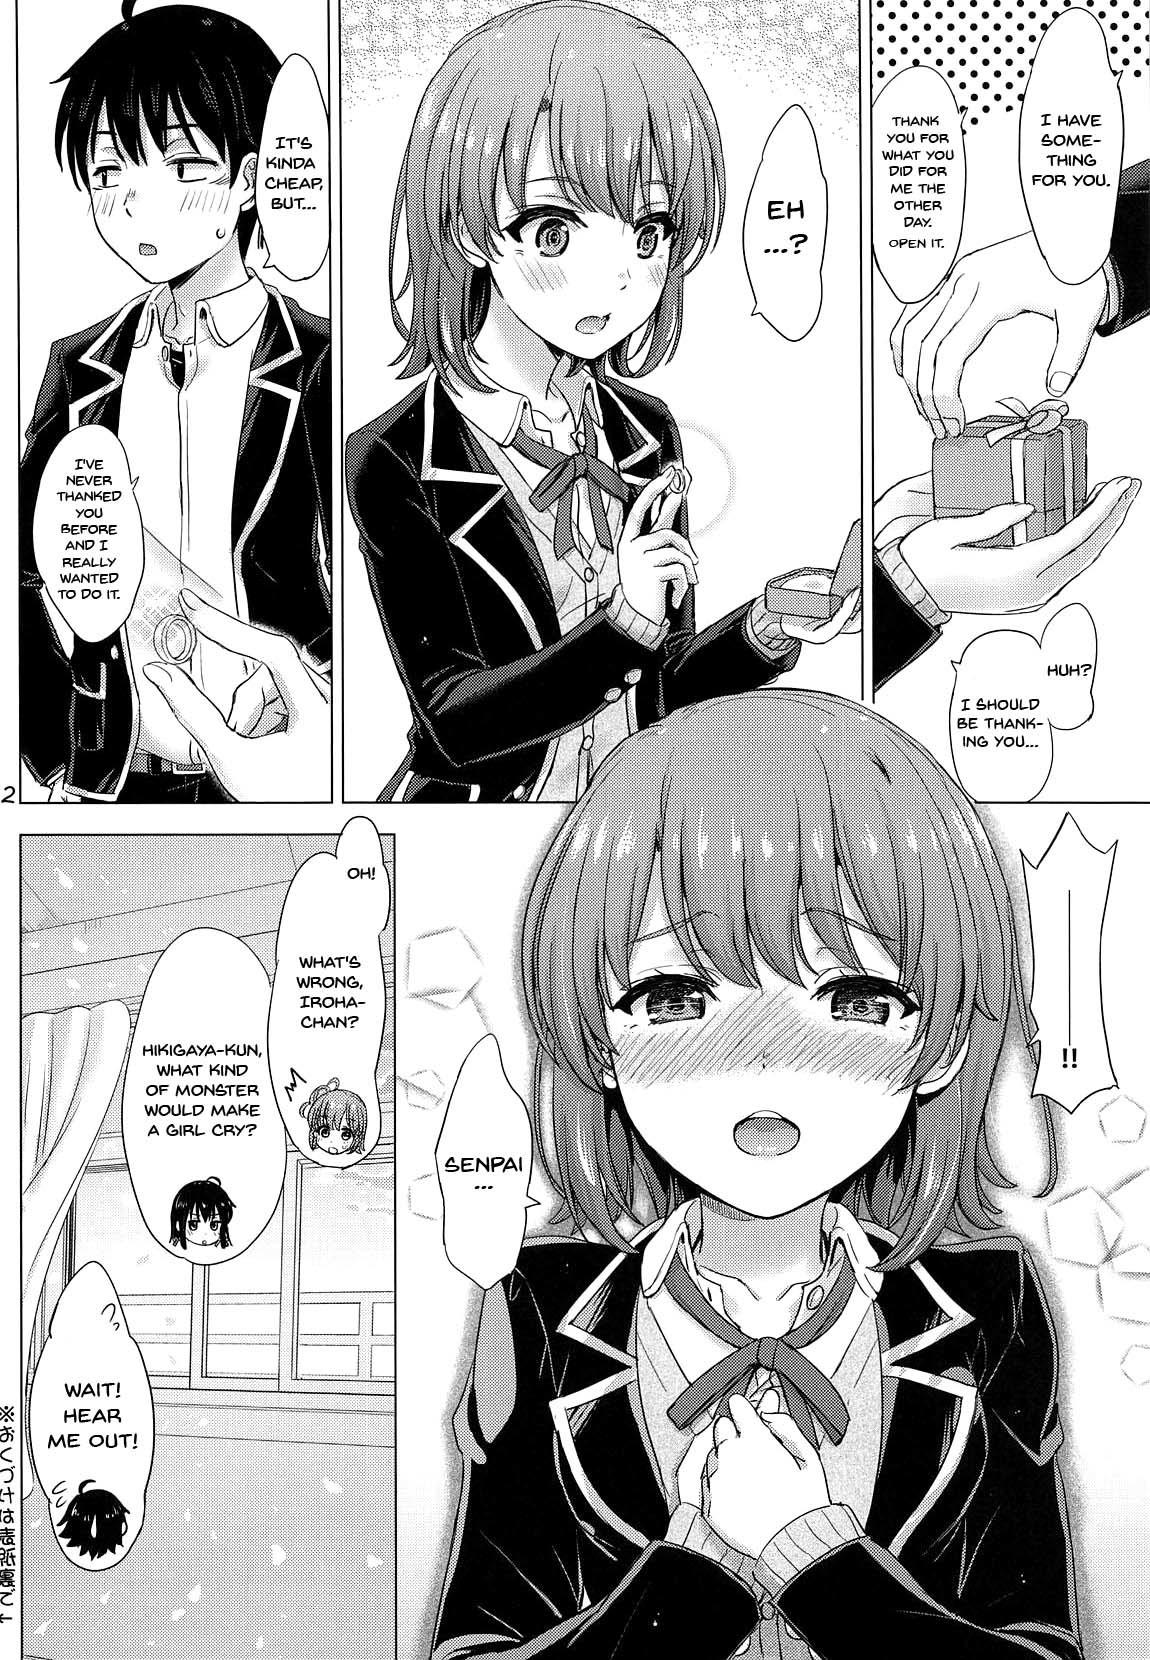 Caseiro Wedding Irohasu! - Iroha's gonna marry you after today's scholl! - Yahari ore no seishun love come wa machigatteiru Licking Pussy - Page 21